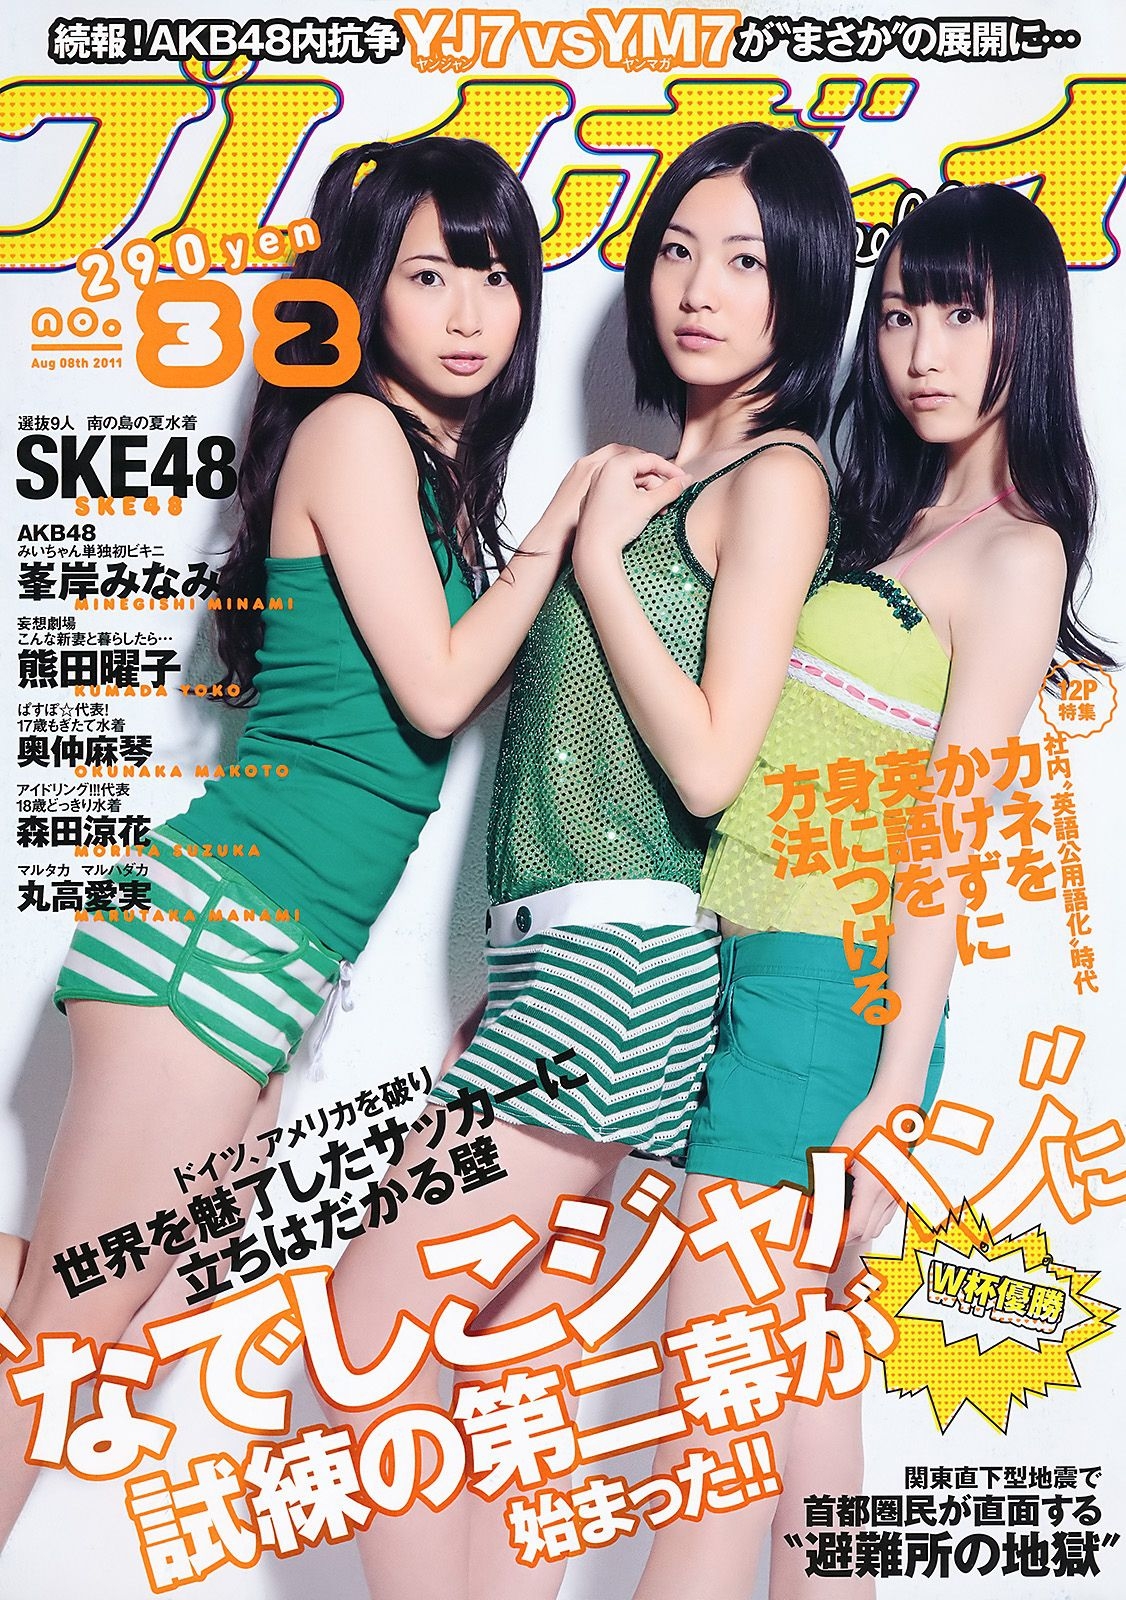 SKE48 峯岸みなみ 奥仲麻琴 森田凉花 熊田曜子 丸高愛実 [Weekly Playboy] 2011年No.32 写真杂志 